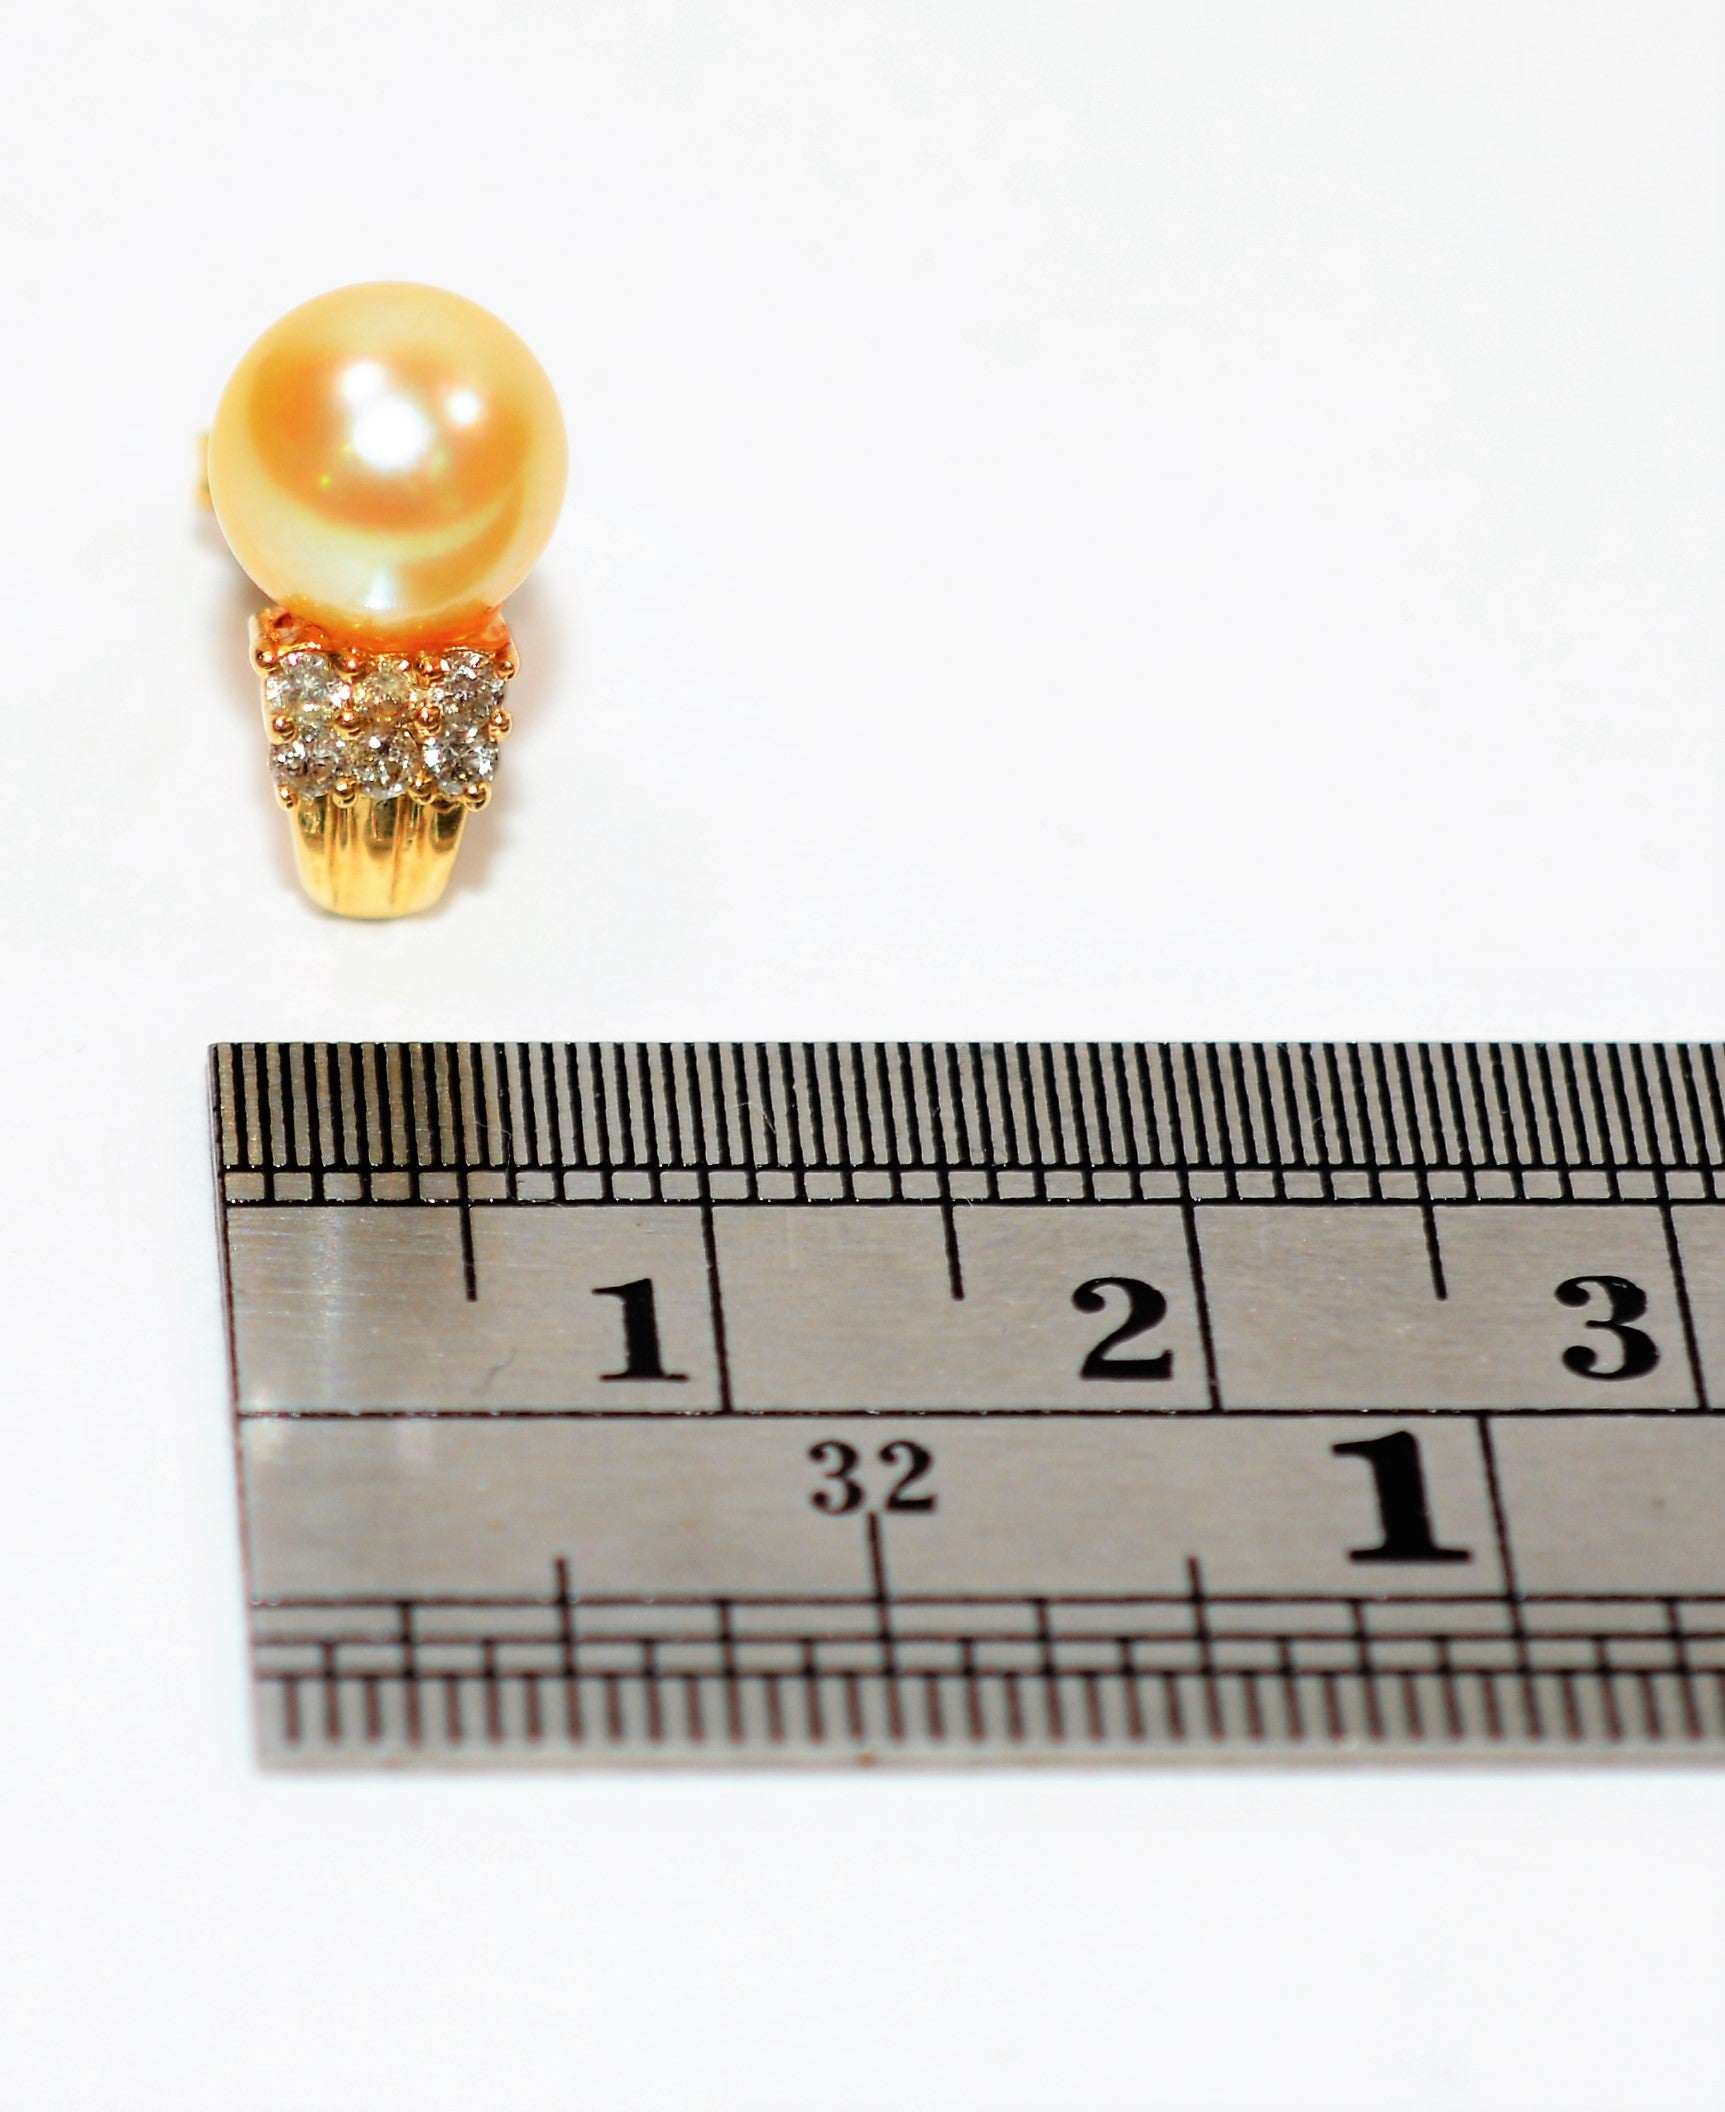 Natural South Sea Pearl & Diamond Earrings 14K Solid Gold .18tcw Cluster Earrings Stud Earrings Pearl Earrings Statement Women's Earrings